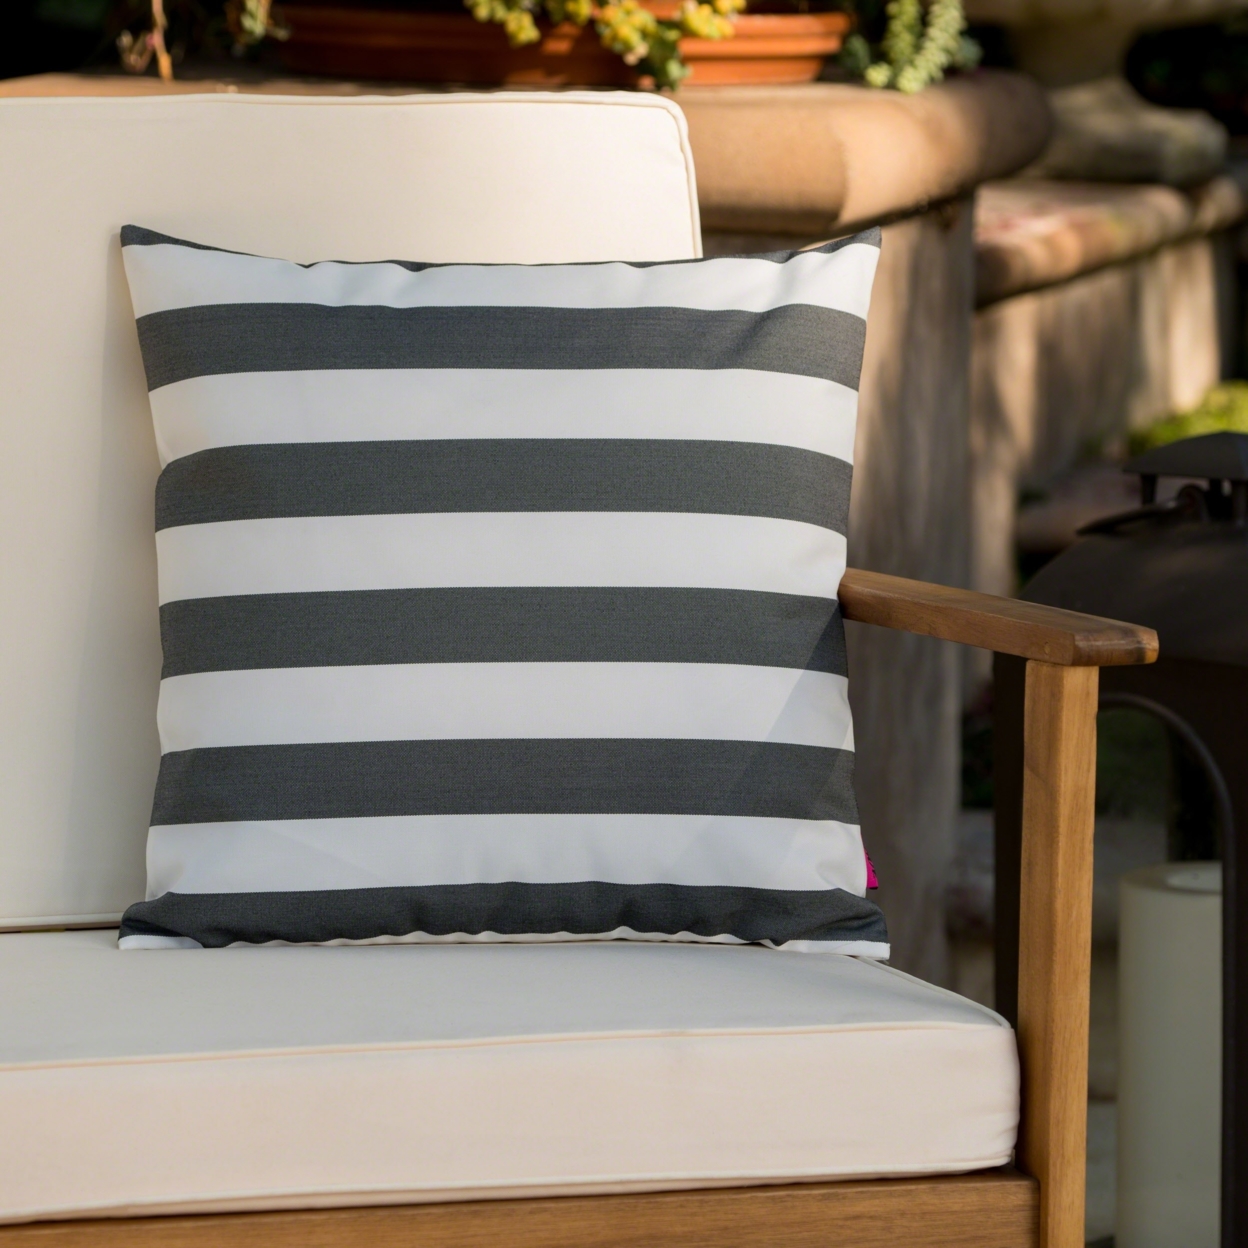 Coronado Outdoor Stripe Water Resistant Square Throw Pillow - Black/white, Single